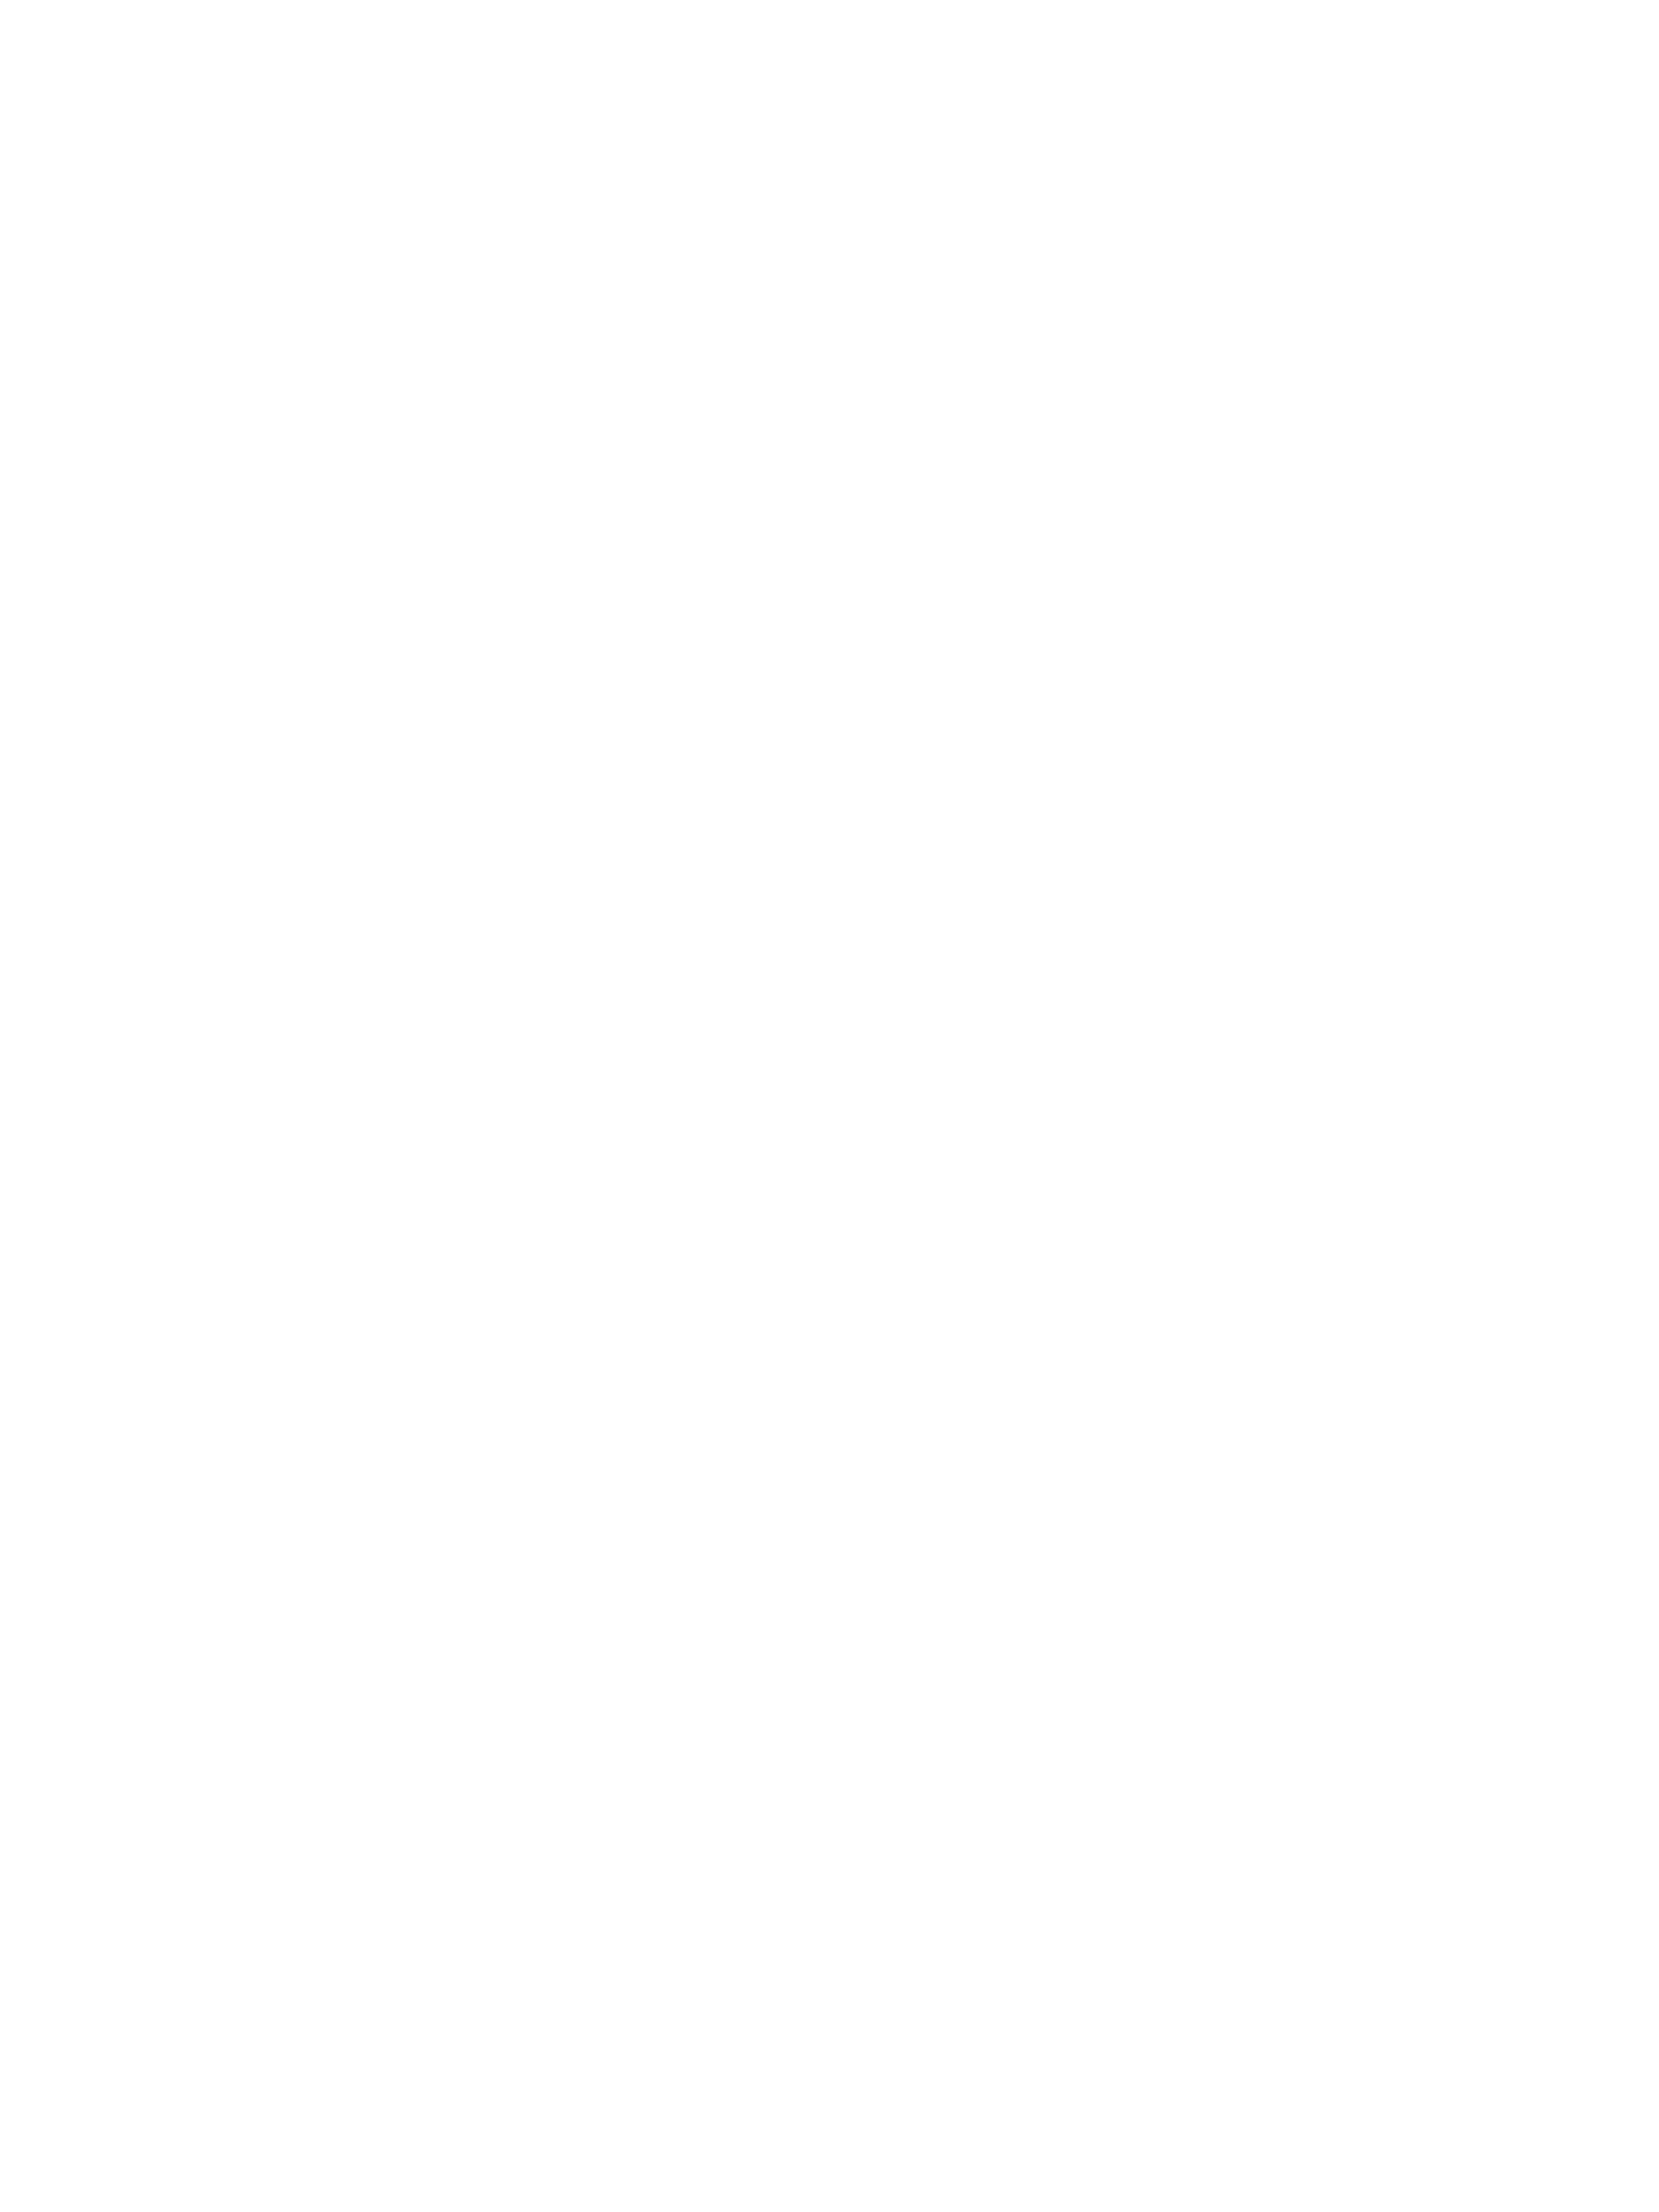 фирменные бейджик с логотипом компании